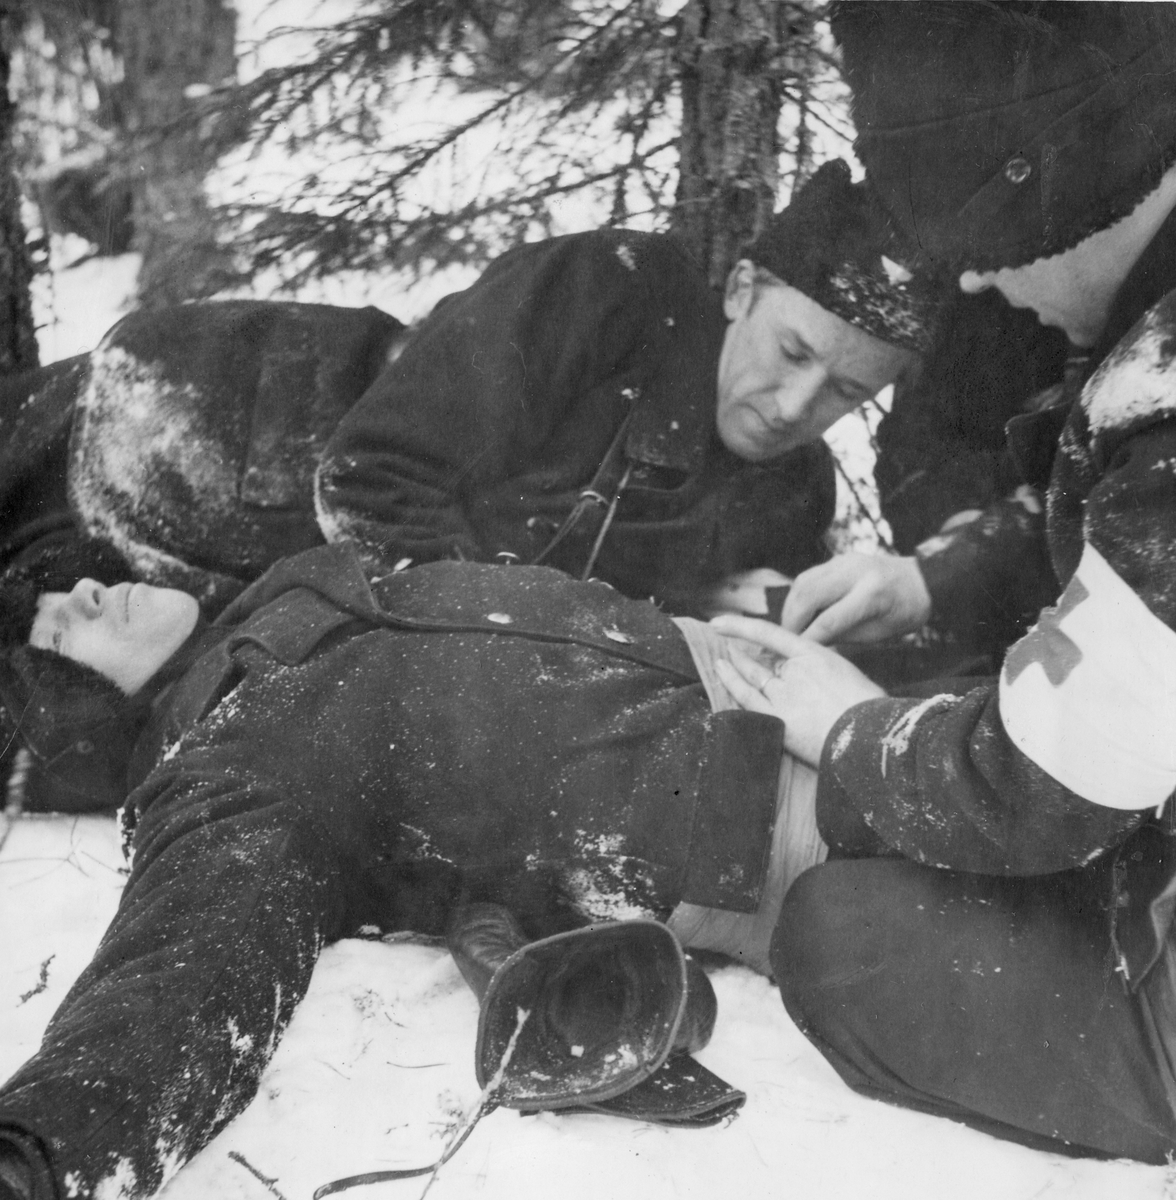 Första hjälpen utförs på soldat som agerar skadad vid sjukvårdsövning i fält vid F 11 Södermanlands flygflottilj, 1945. Omplåstring av skottskada i magen.

Vintertid.

Ur fotoalbum "Sjukvårdsskolan 15/1-15/3 1945" från F 11.